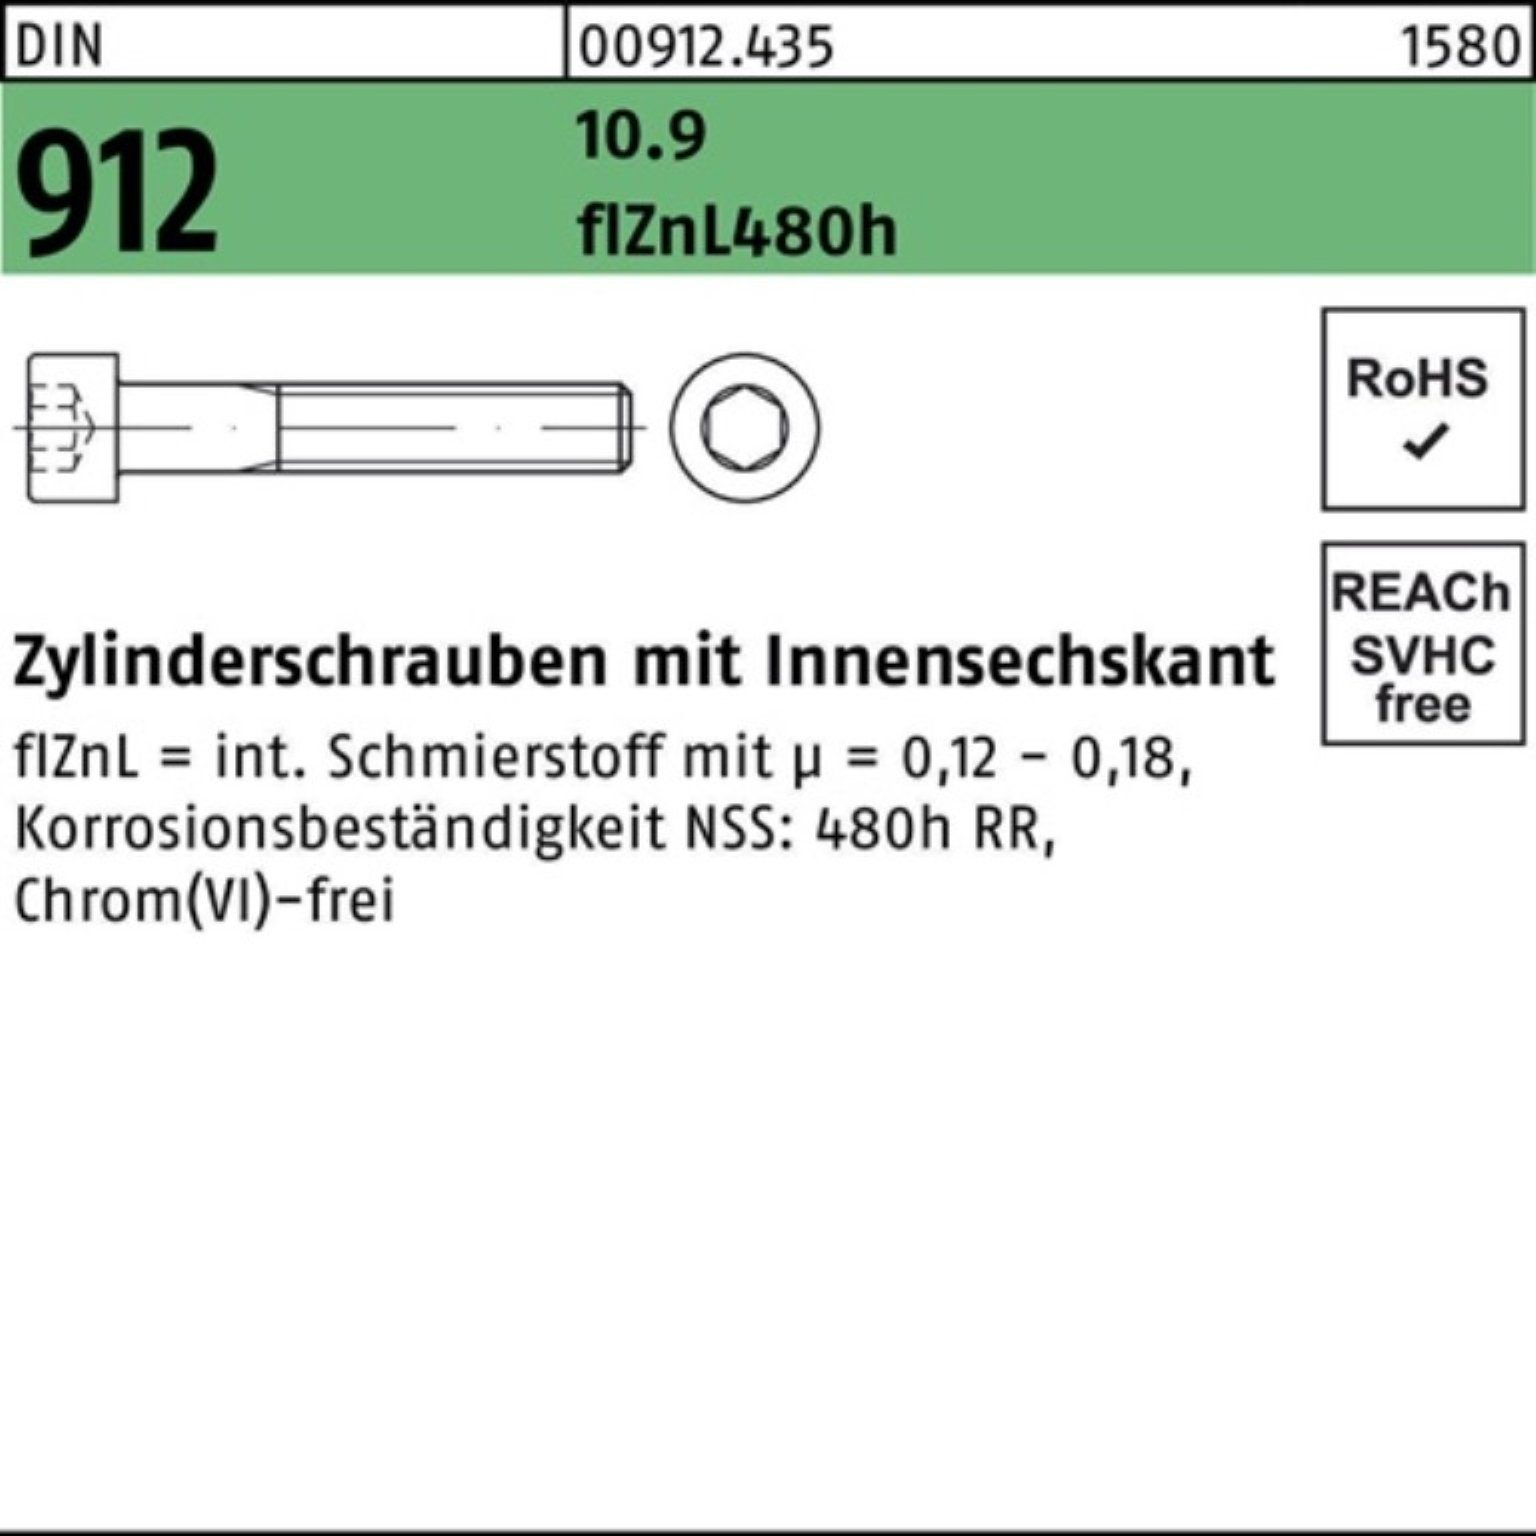 Reyher Zylinderschraube 100er Pack Innen-6kt 10.9 DIN M12x70 Zylinderschraube flZnL/nc/x/x 912